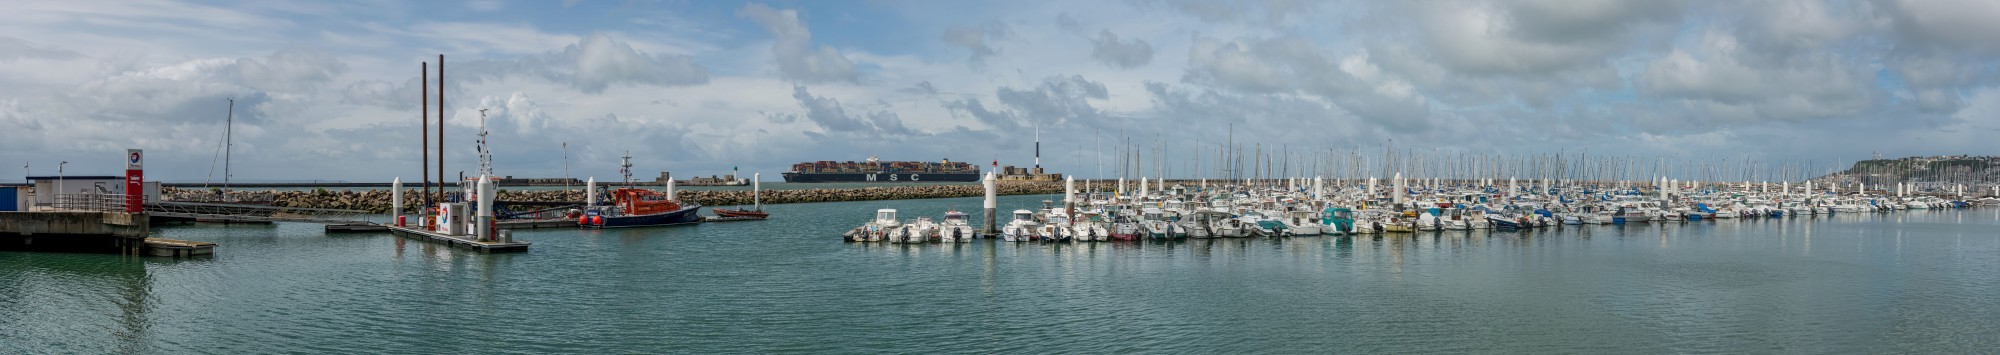 Port de Plaisance, Le Havre 20140512 1